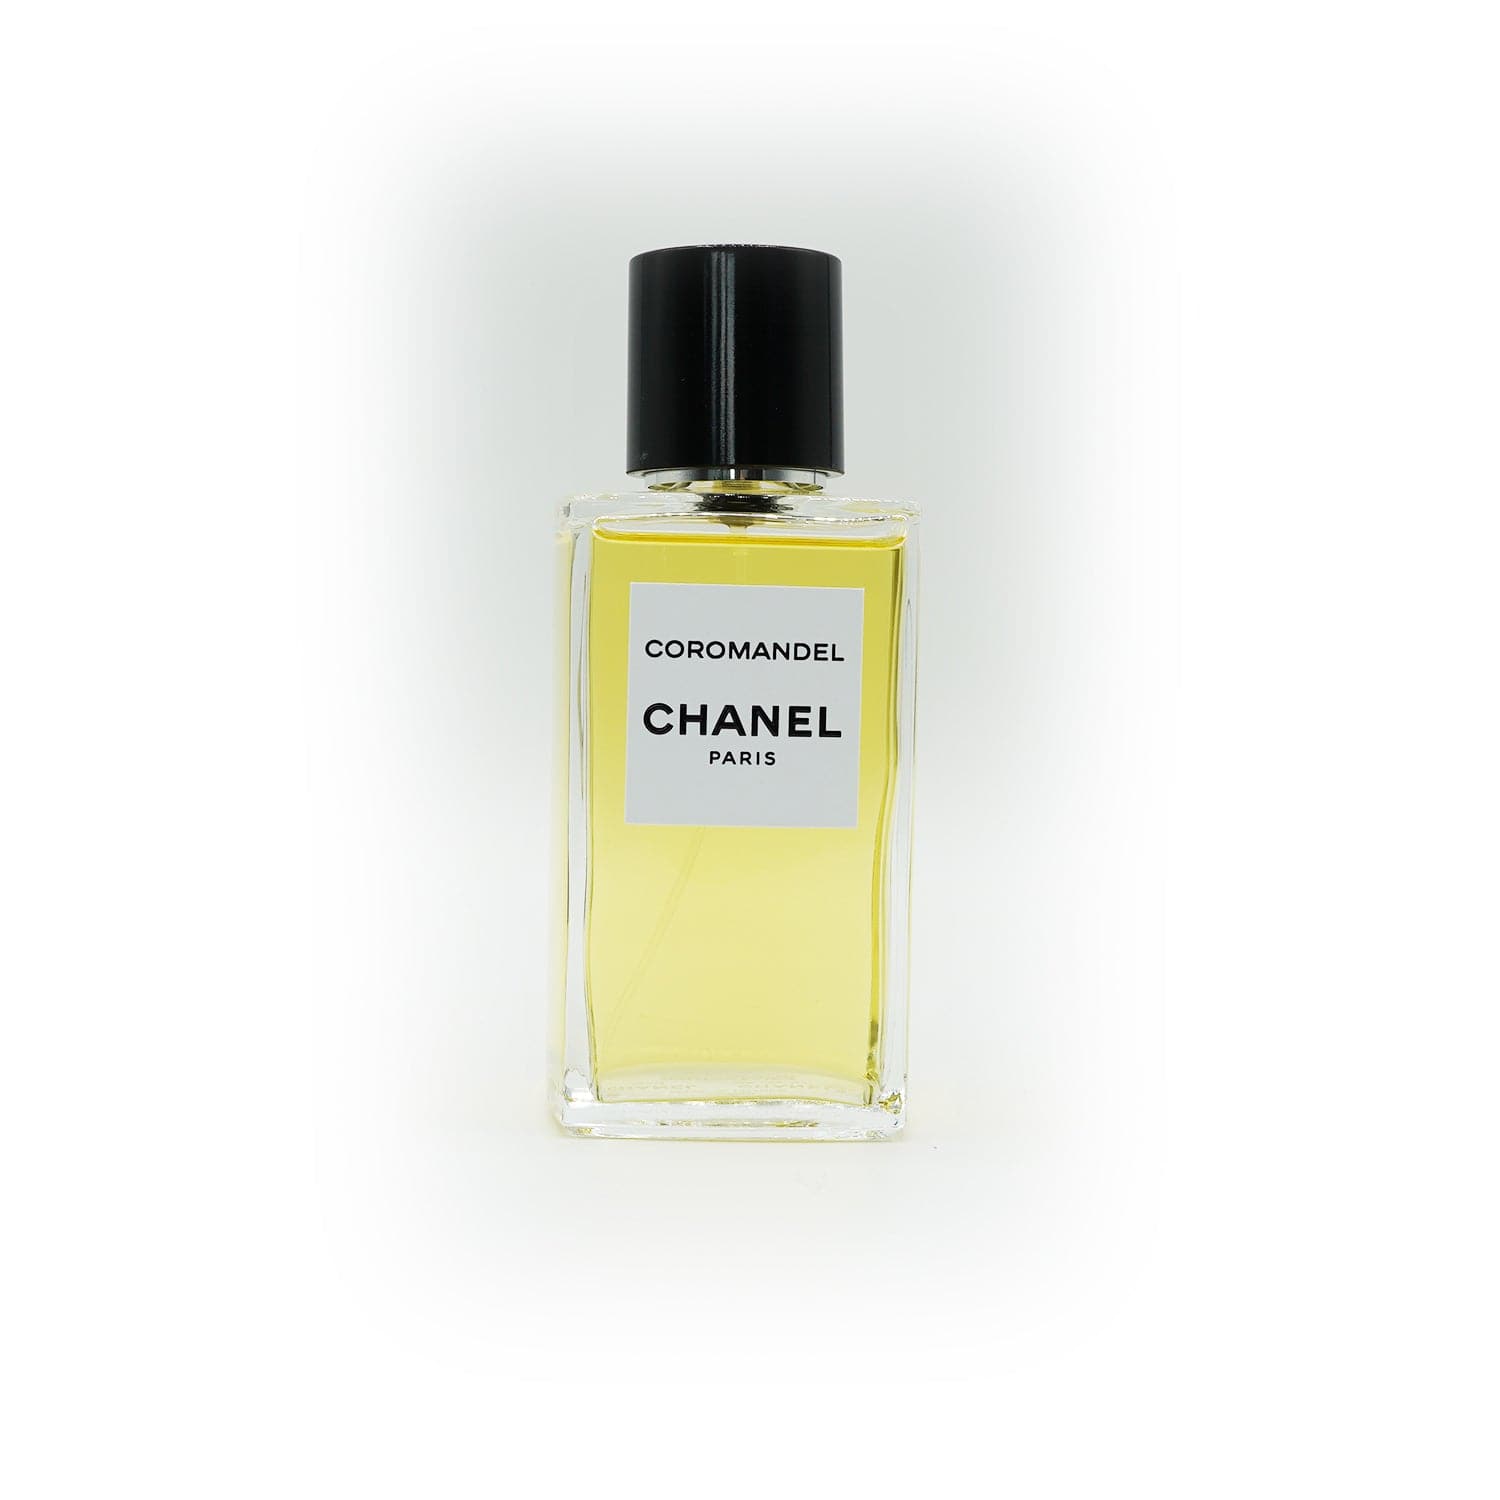 Les Exclusives de Chanel | Coromandel bottling